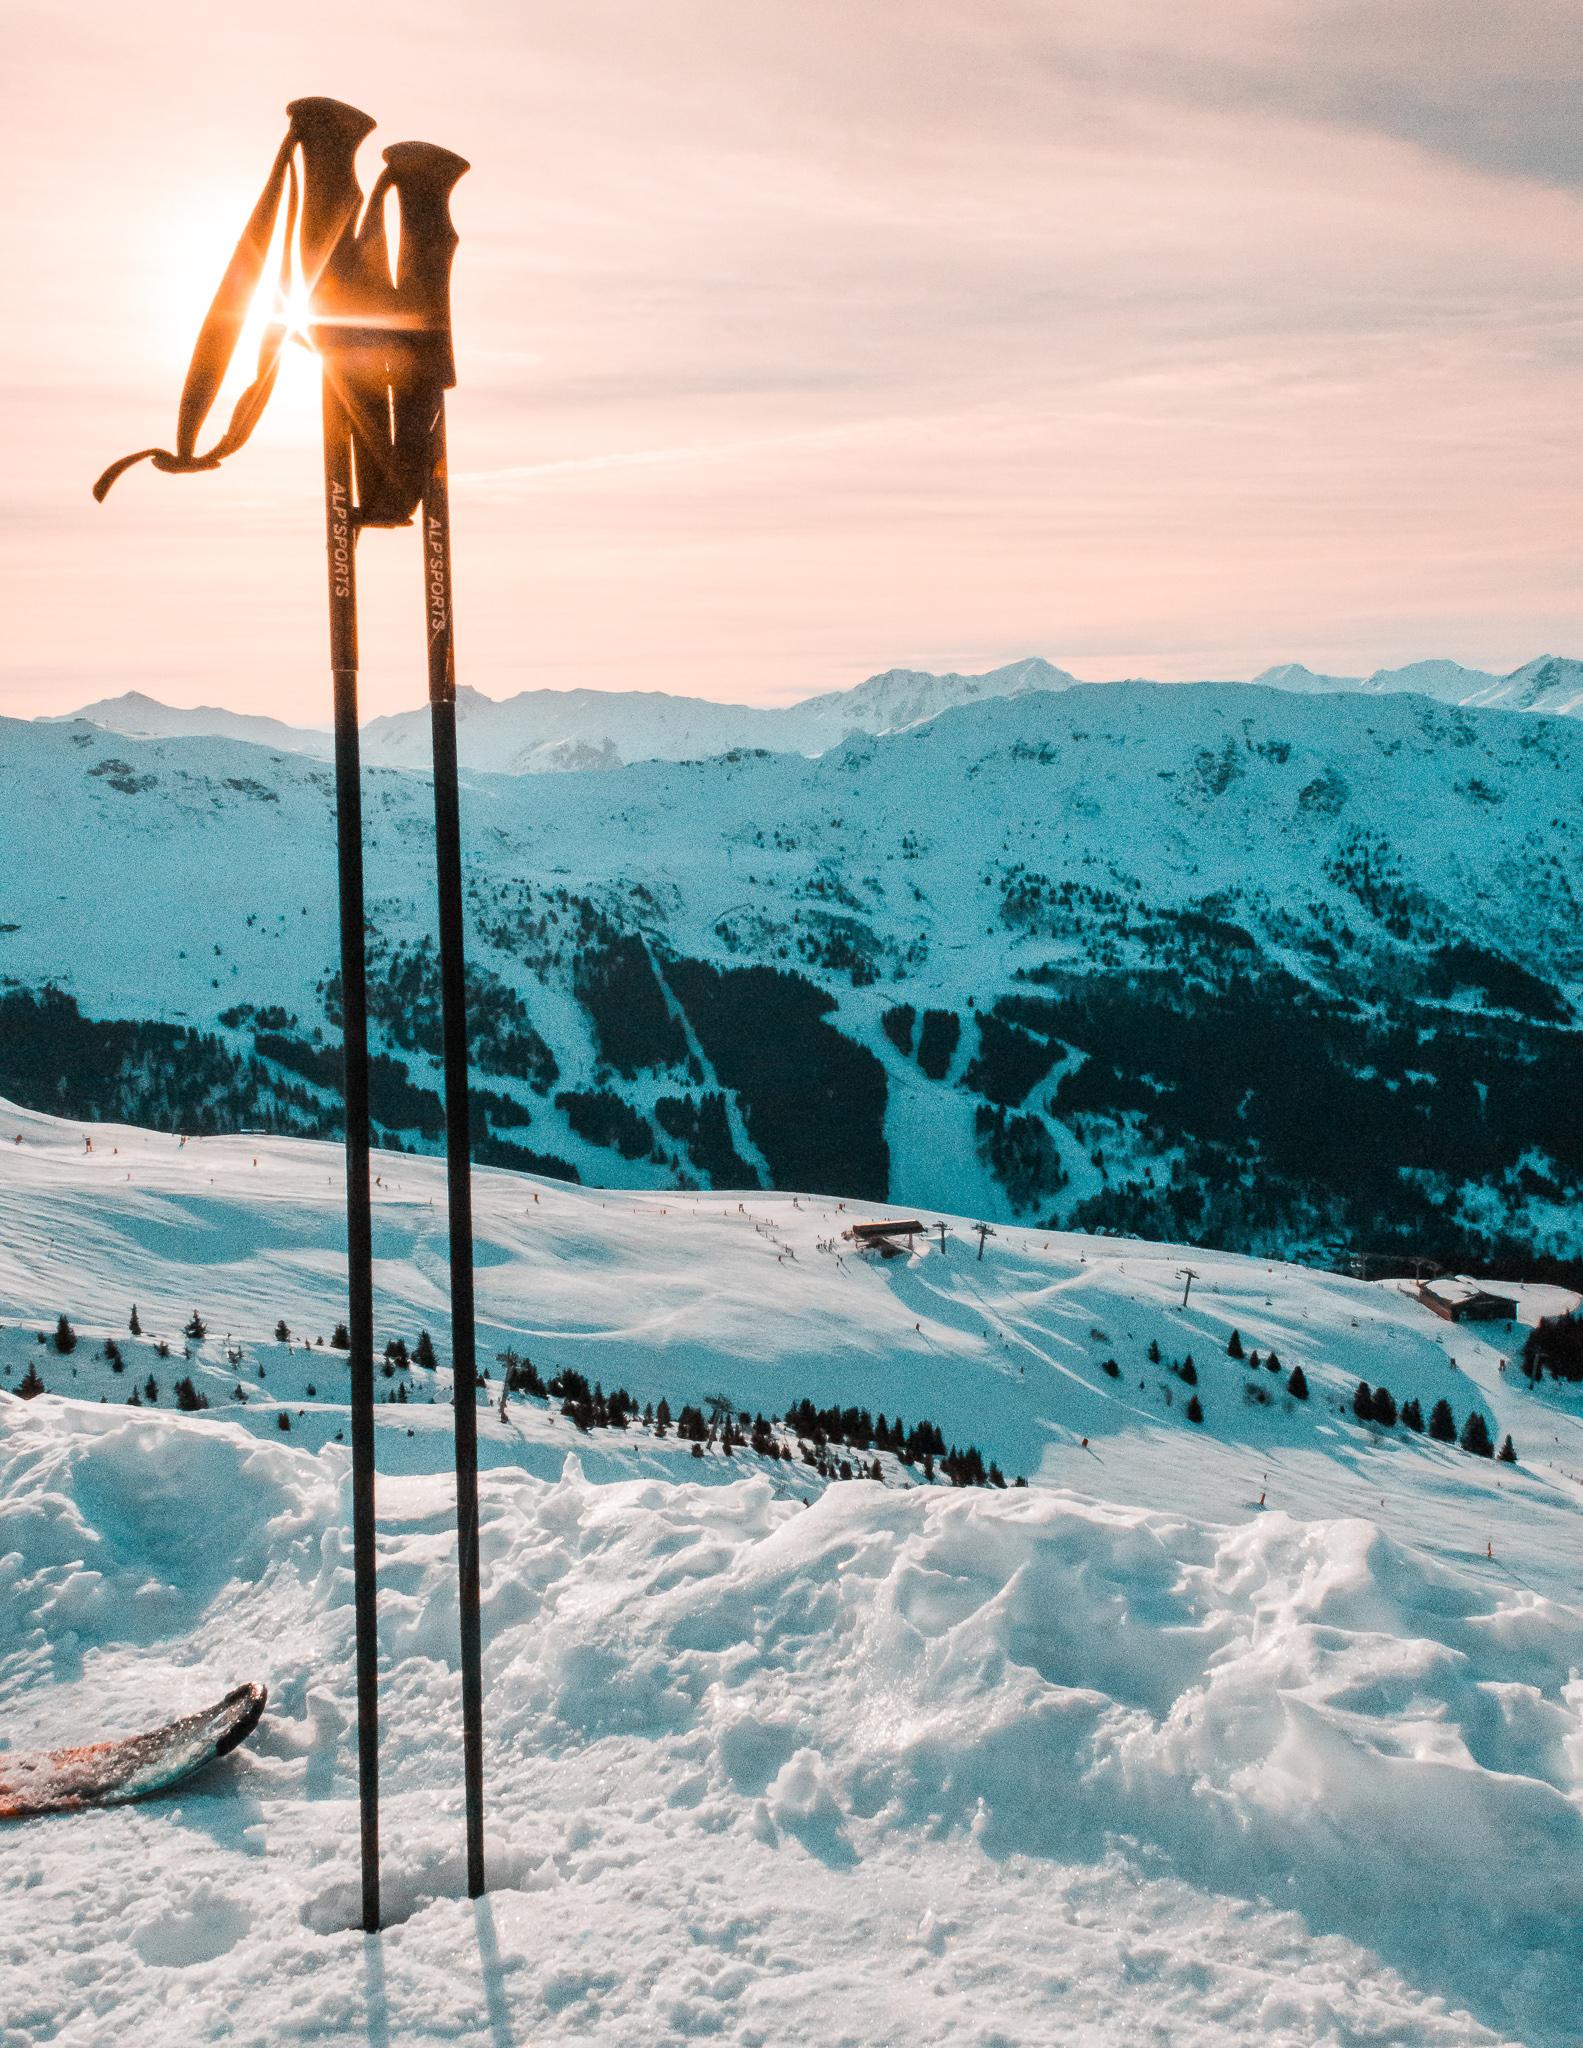 ski poles dug into the snow on a snowy mountain on a sunny day